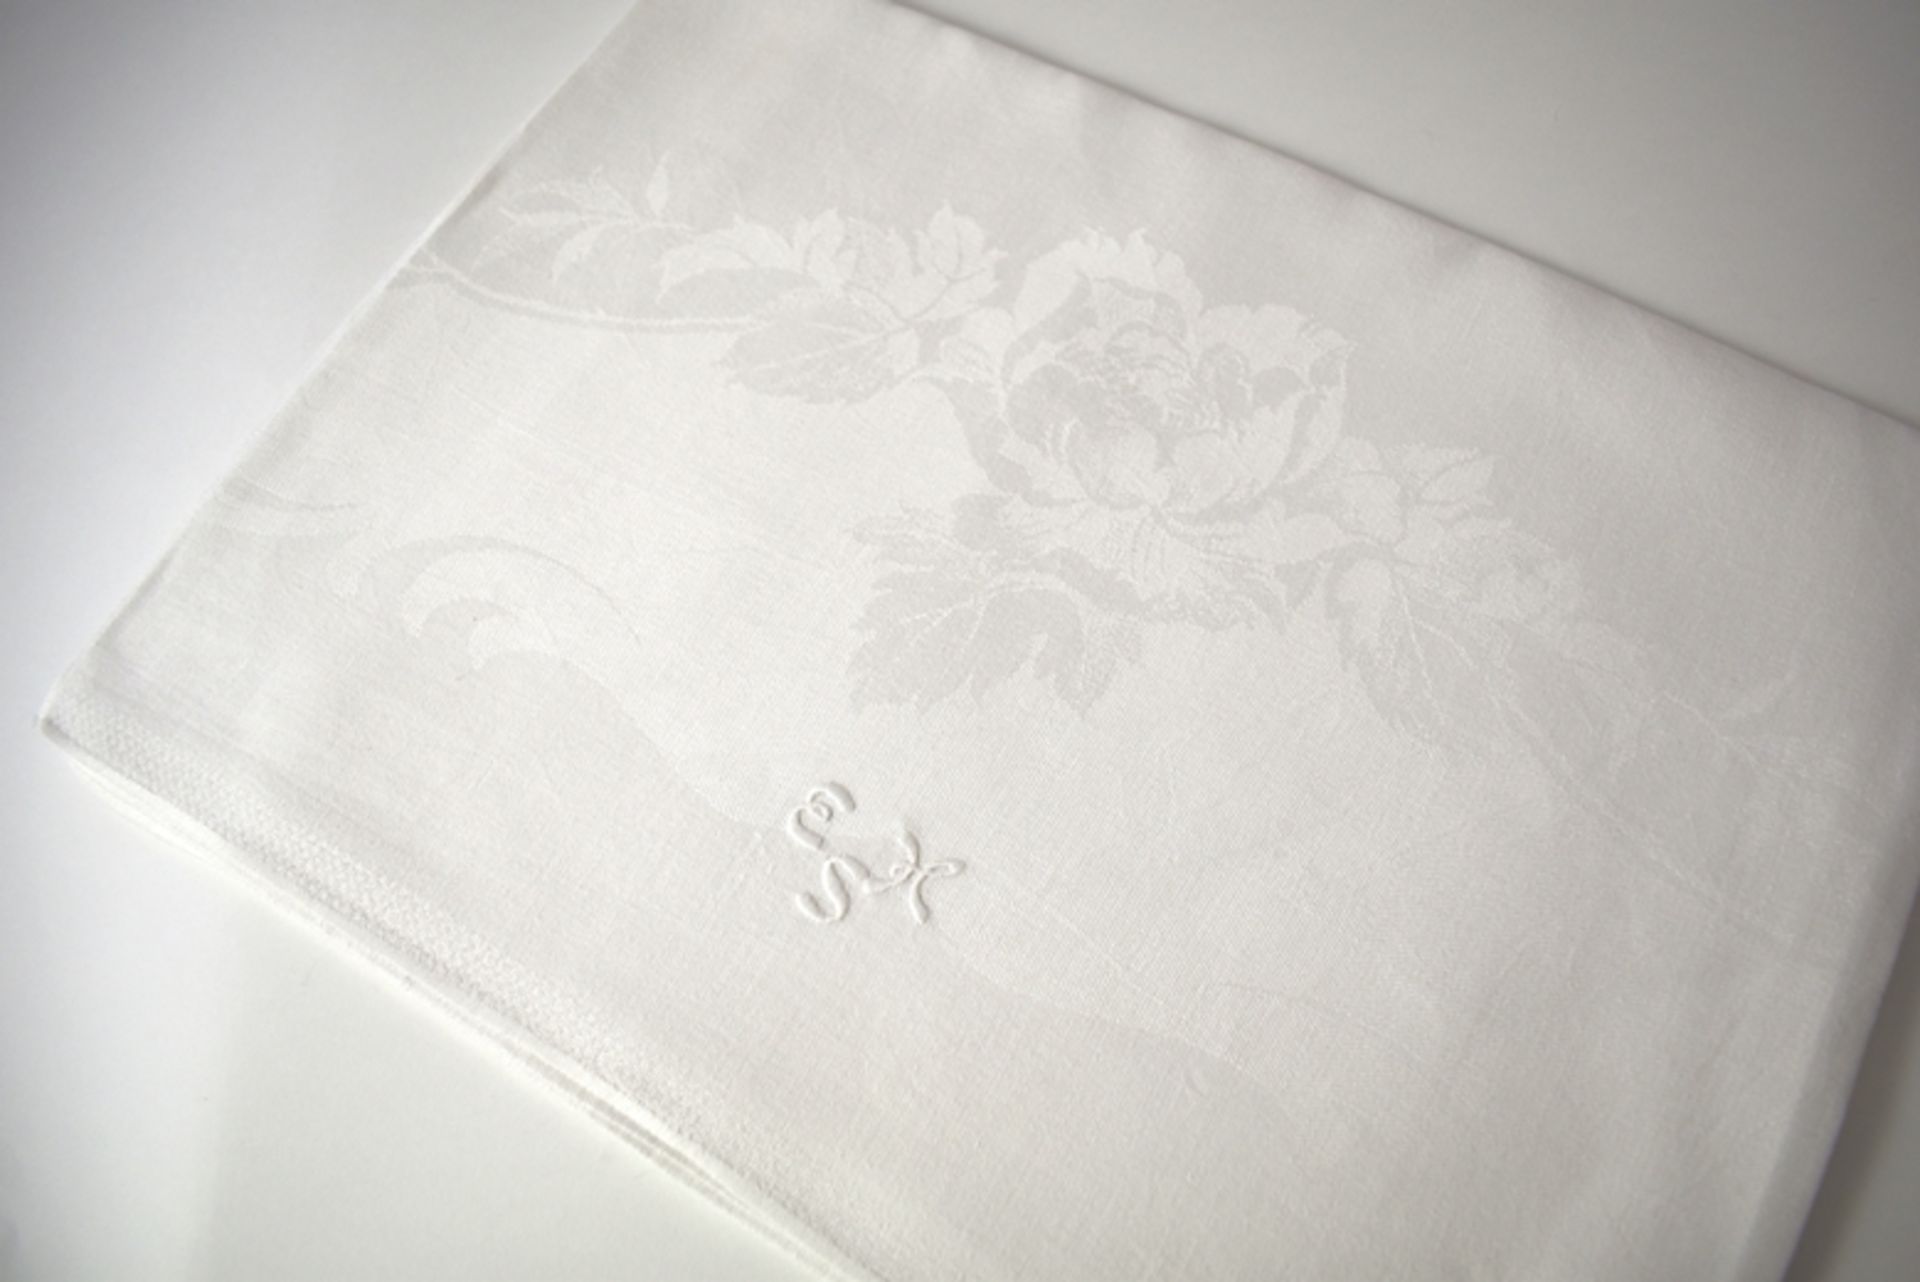 Quadratisches schwedisches Tischtuch mit Rosen und Monogramm "EHS". Feiner weißer Leinendamast. Ges